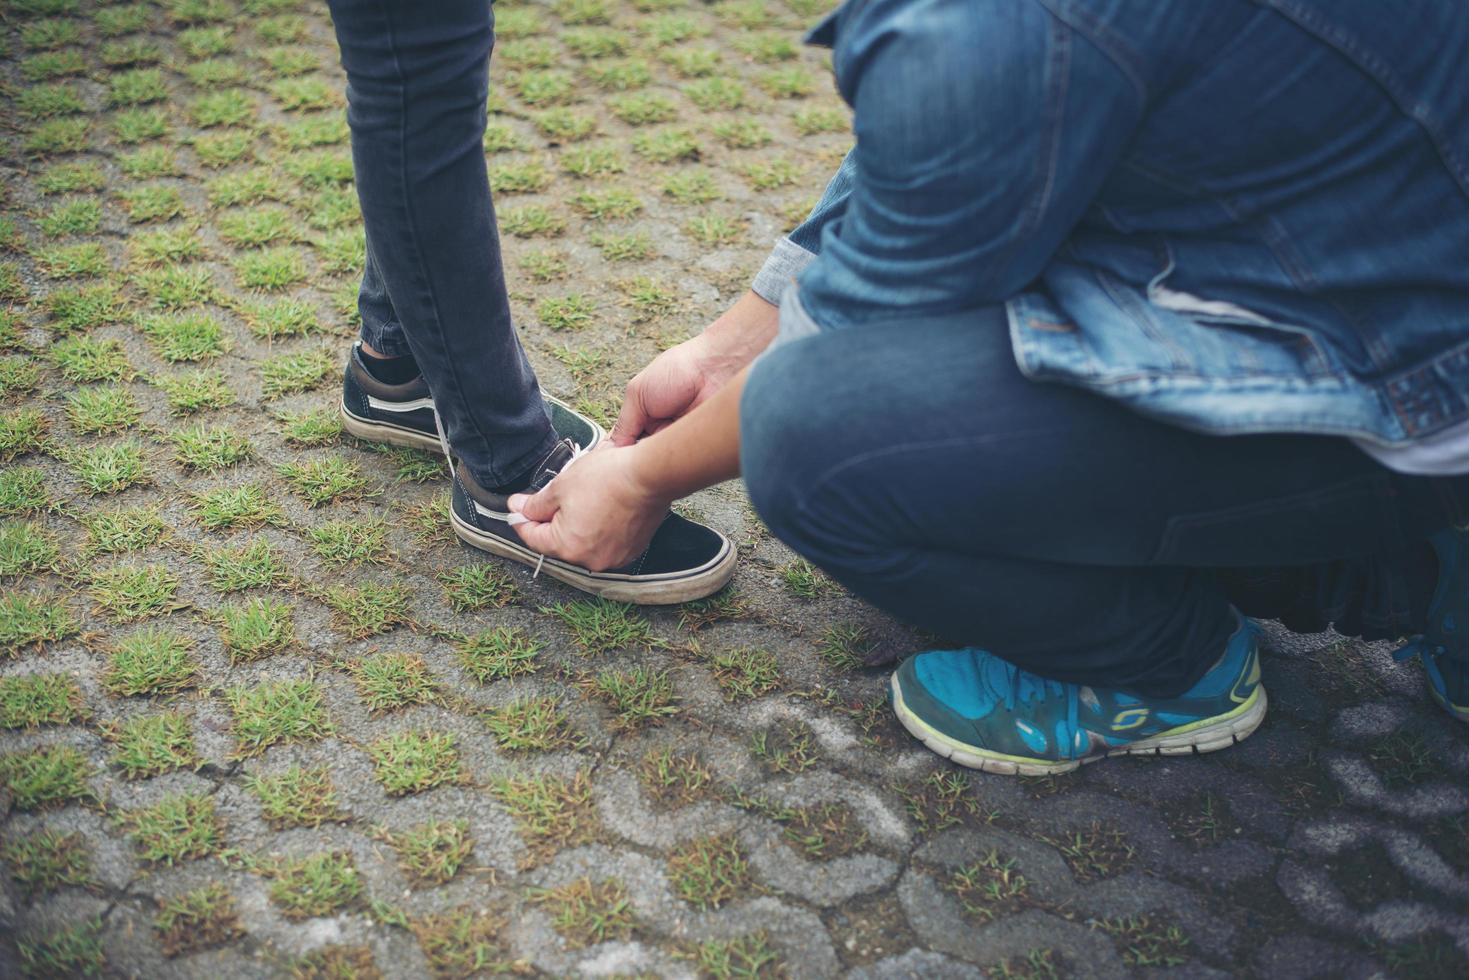 novio hipster atando zapatos a sus chicas mientras se relaja en vacaciones, concepto de pareja enamorada. foto